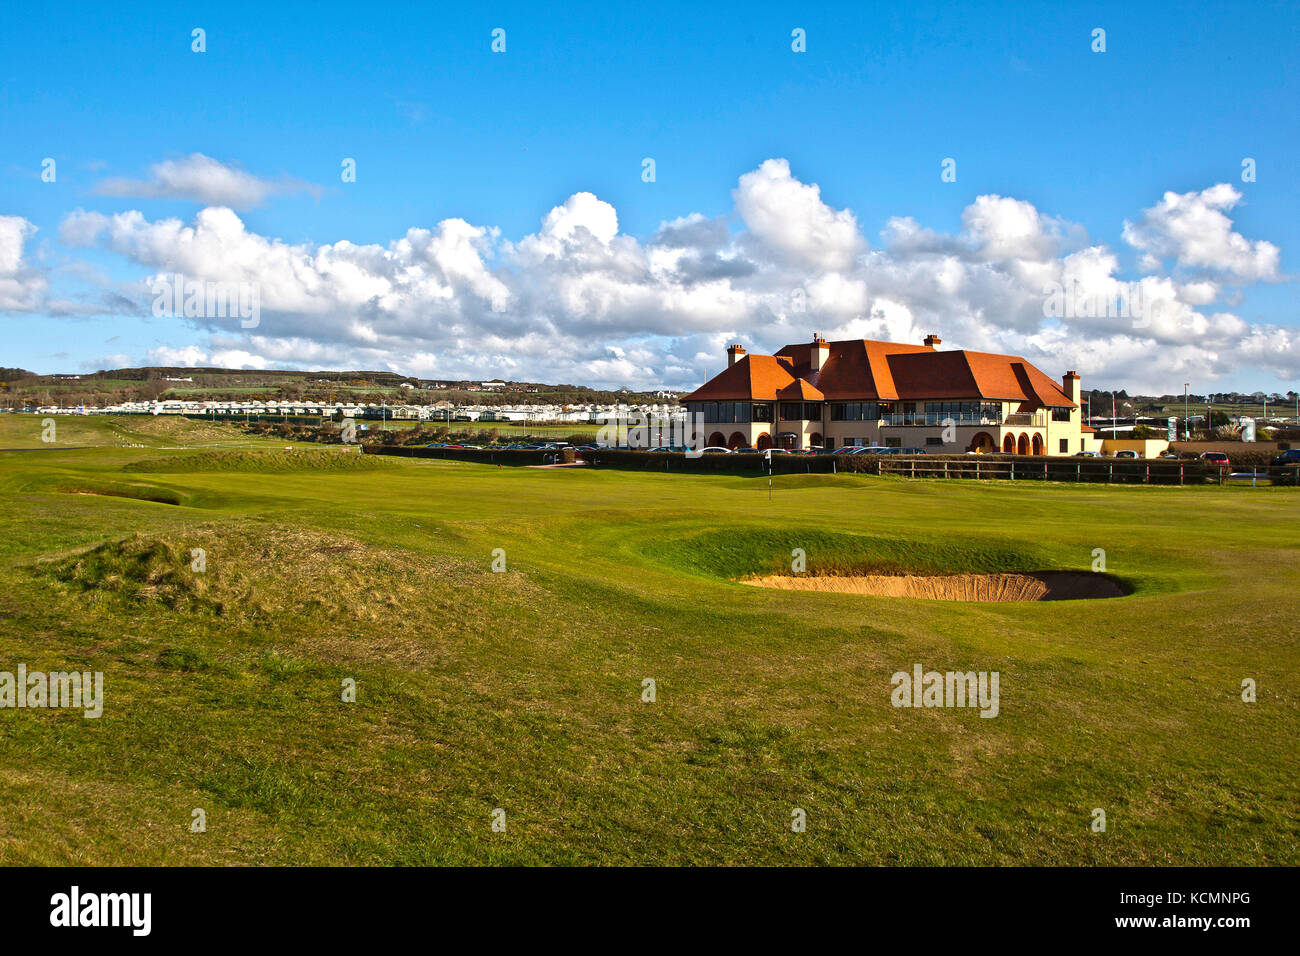 El club de golf Royal portrush la sede para el 2019 Campeonato Abierto de golf Foto de stock